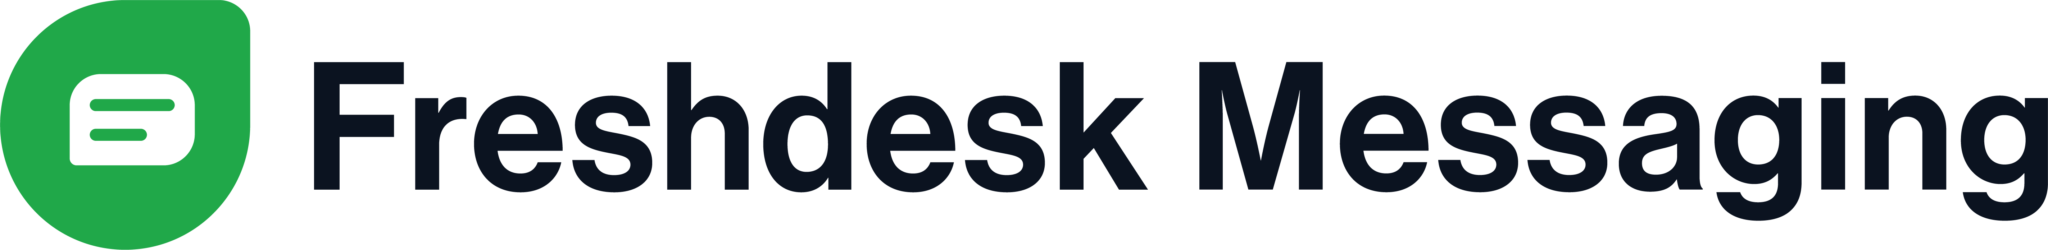 Freshdesk-Messaging-Logo